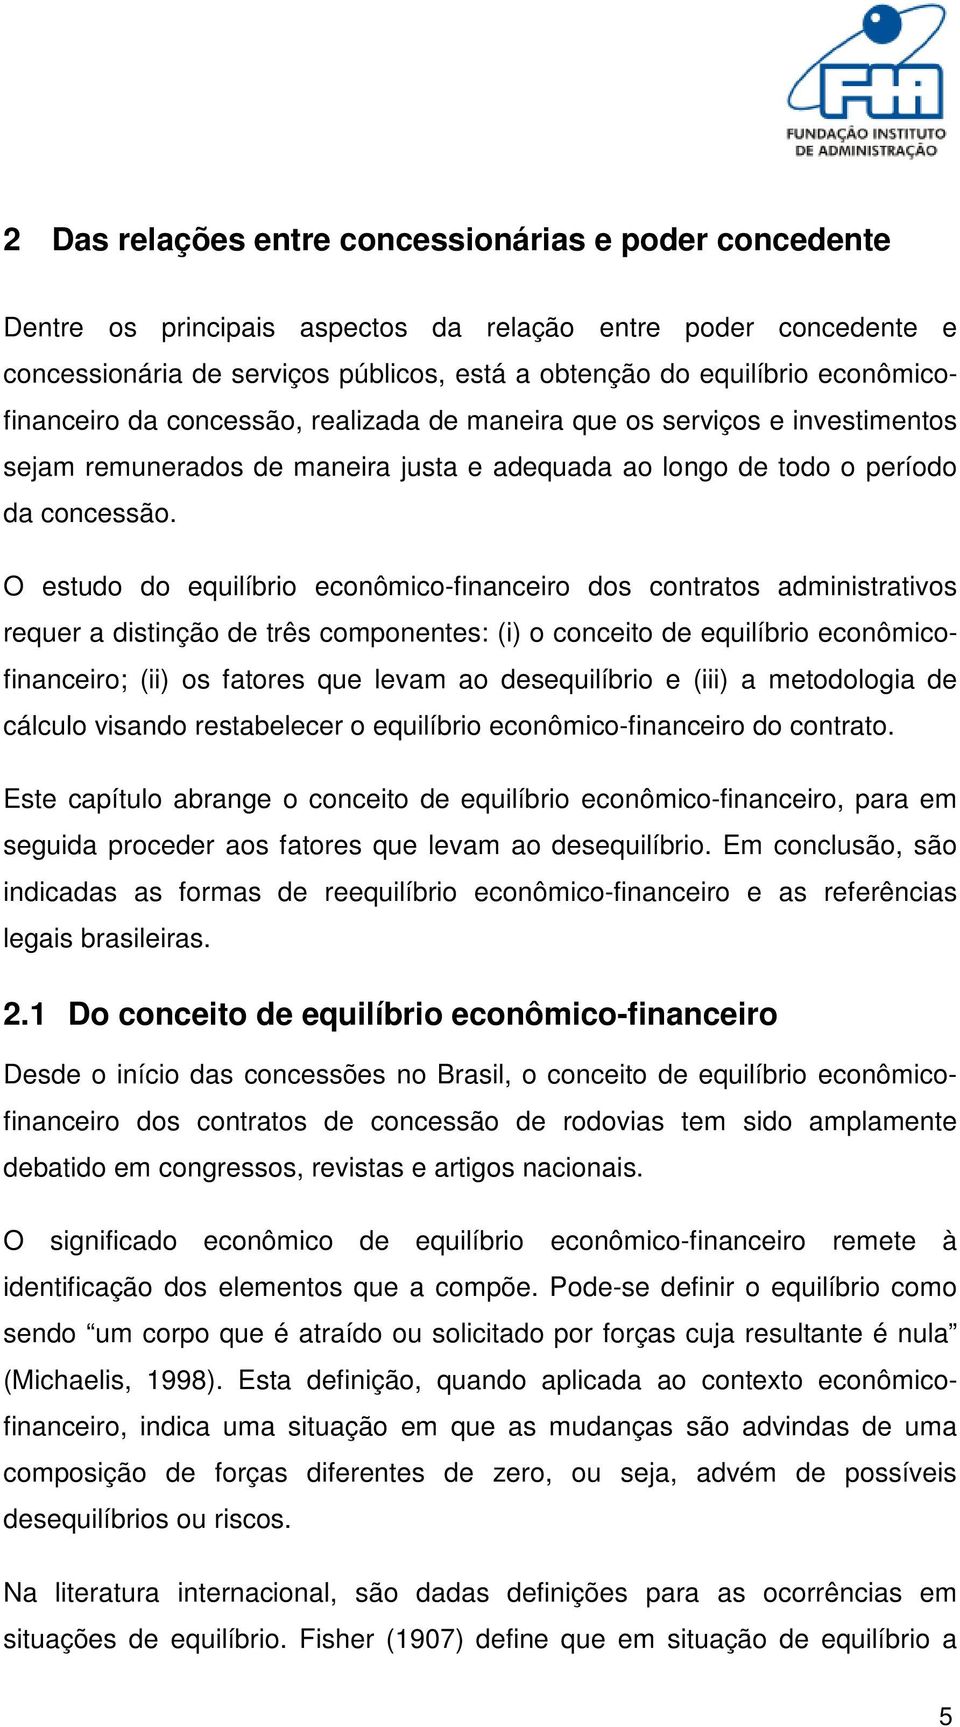 O estudo do equilíbrio econômico-financeiro dos contratos administrativos requer a distinção de três componentes: (i) o conceito de equilíbrio econômicofinanceiro; (ii) os fatores que levam ao